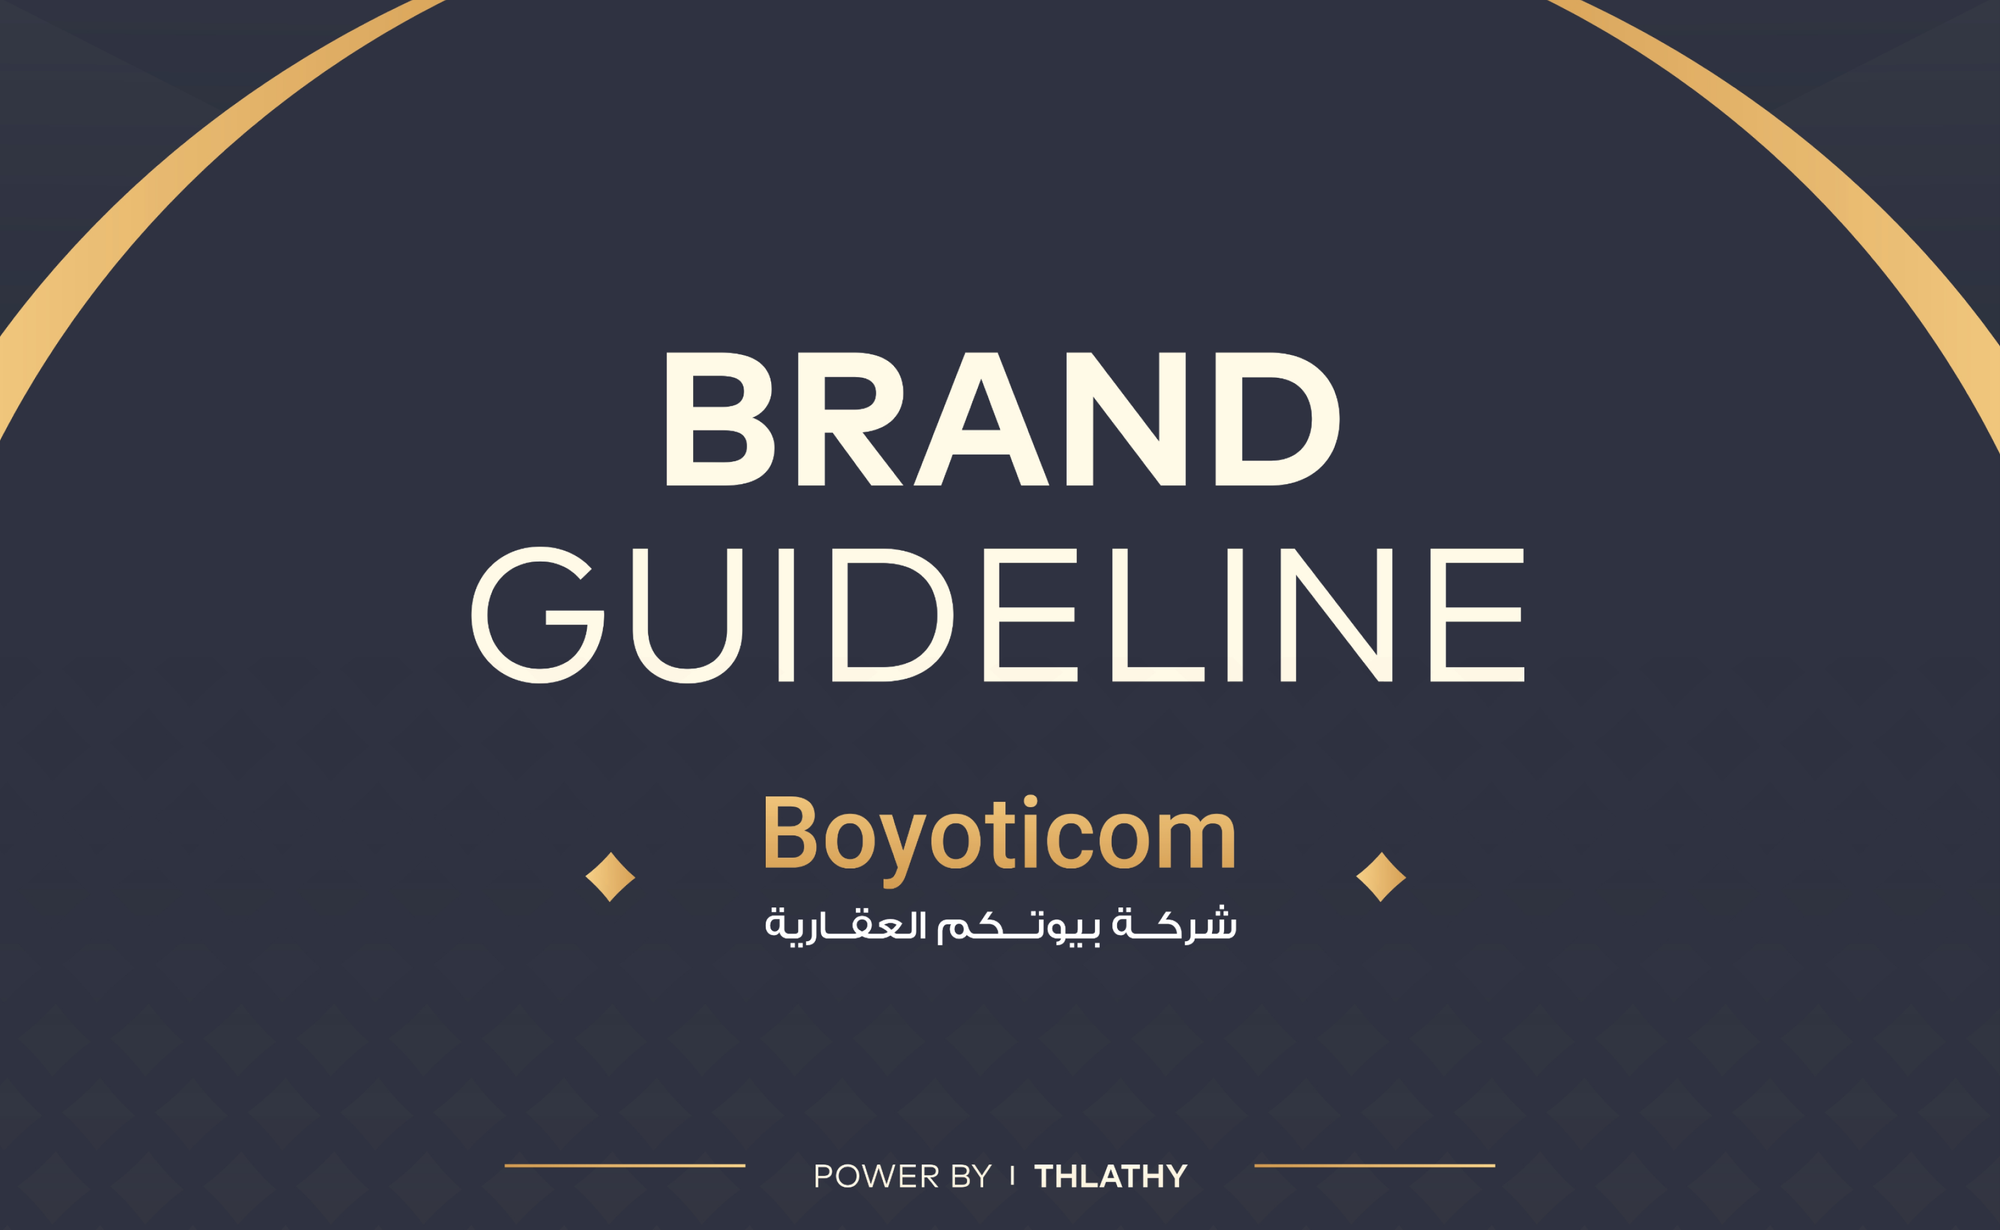 Branding Guide for Boyoticom